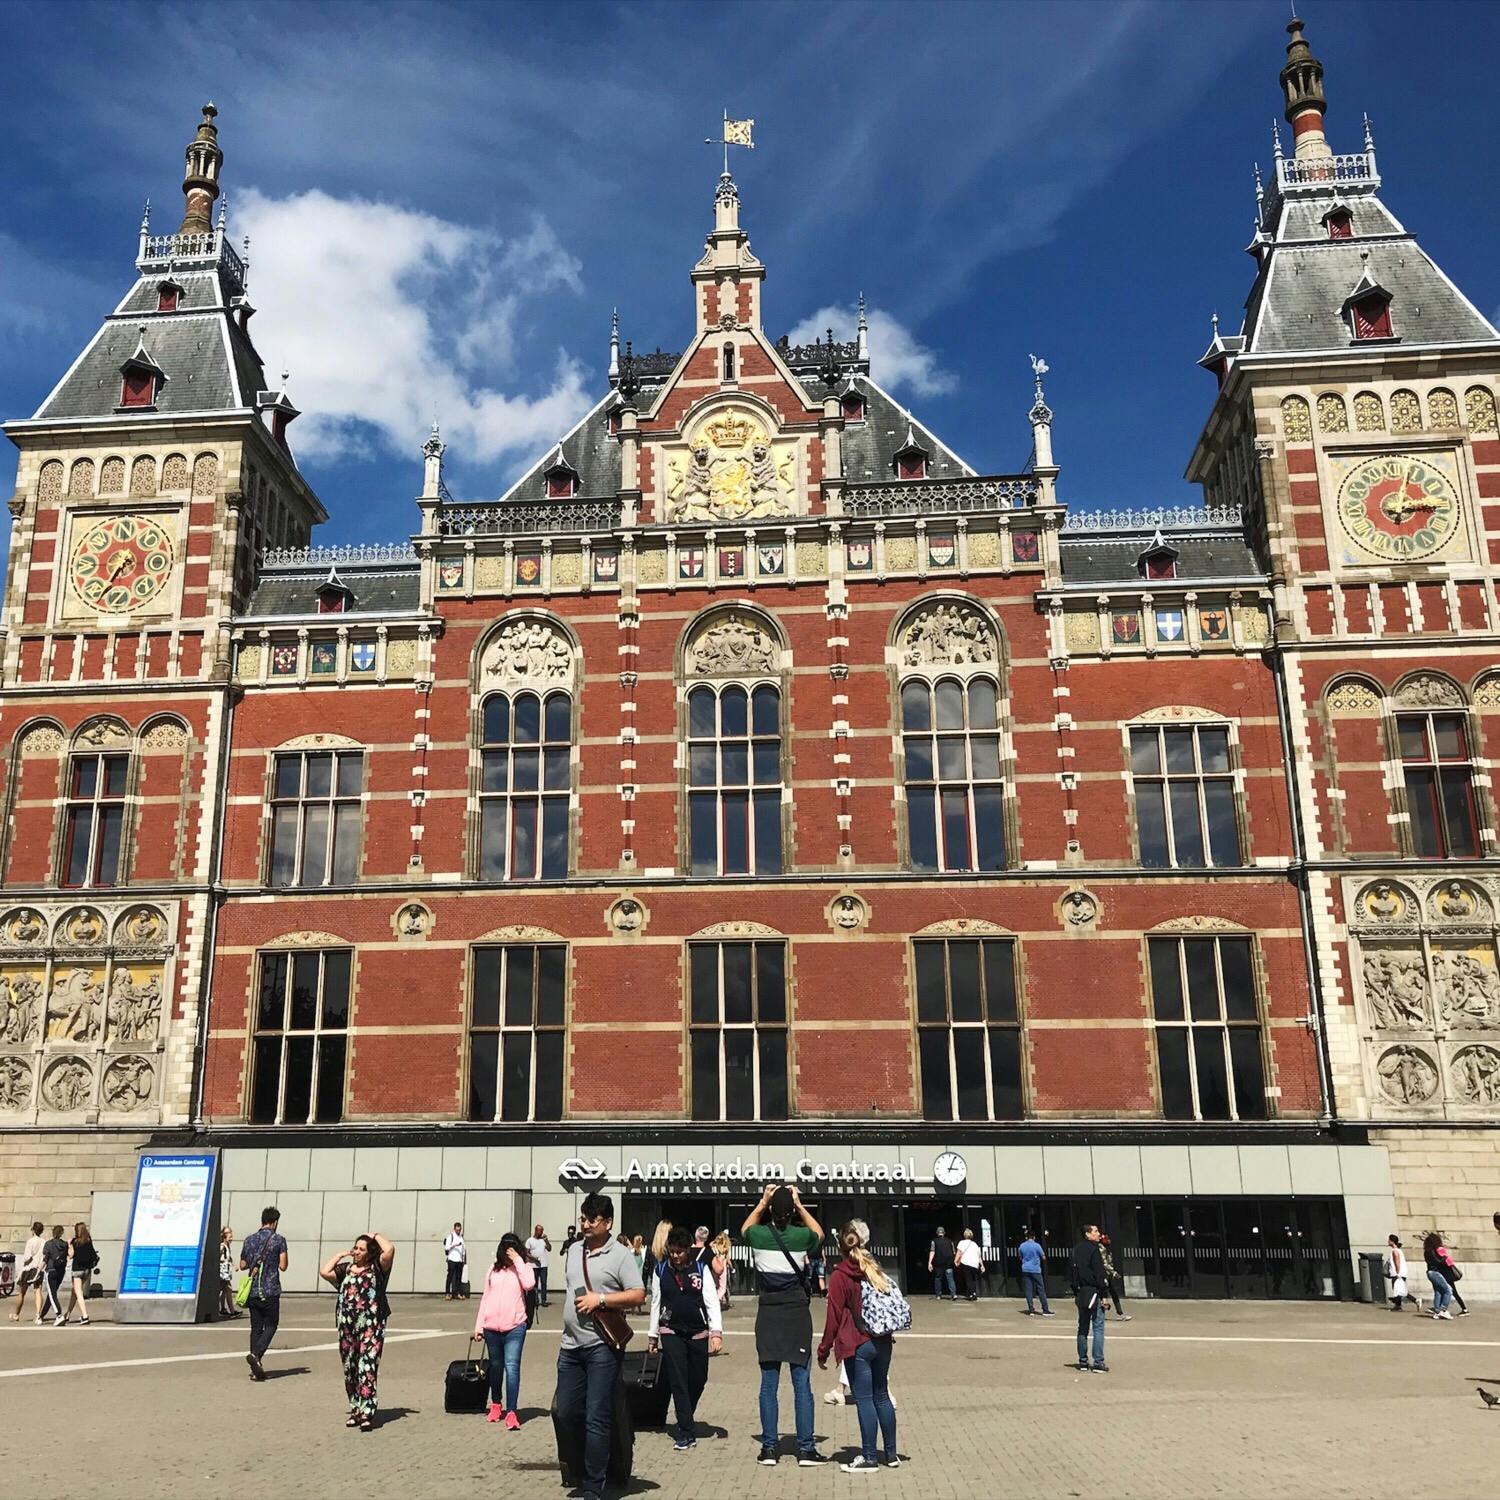 アムステルダム中央駅 Station Amsterdam Centraal の投稿写真 感想 みどころ Amsterdam Central Station 東京駅 トリップノート